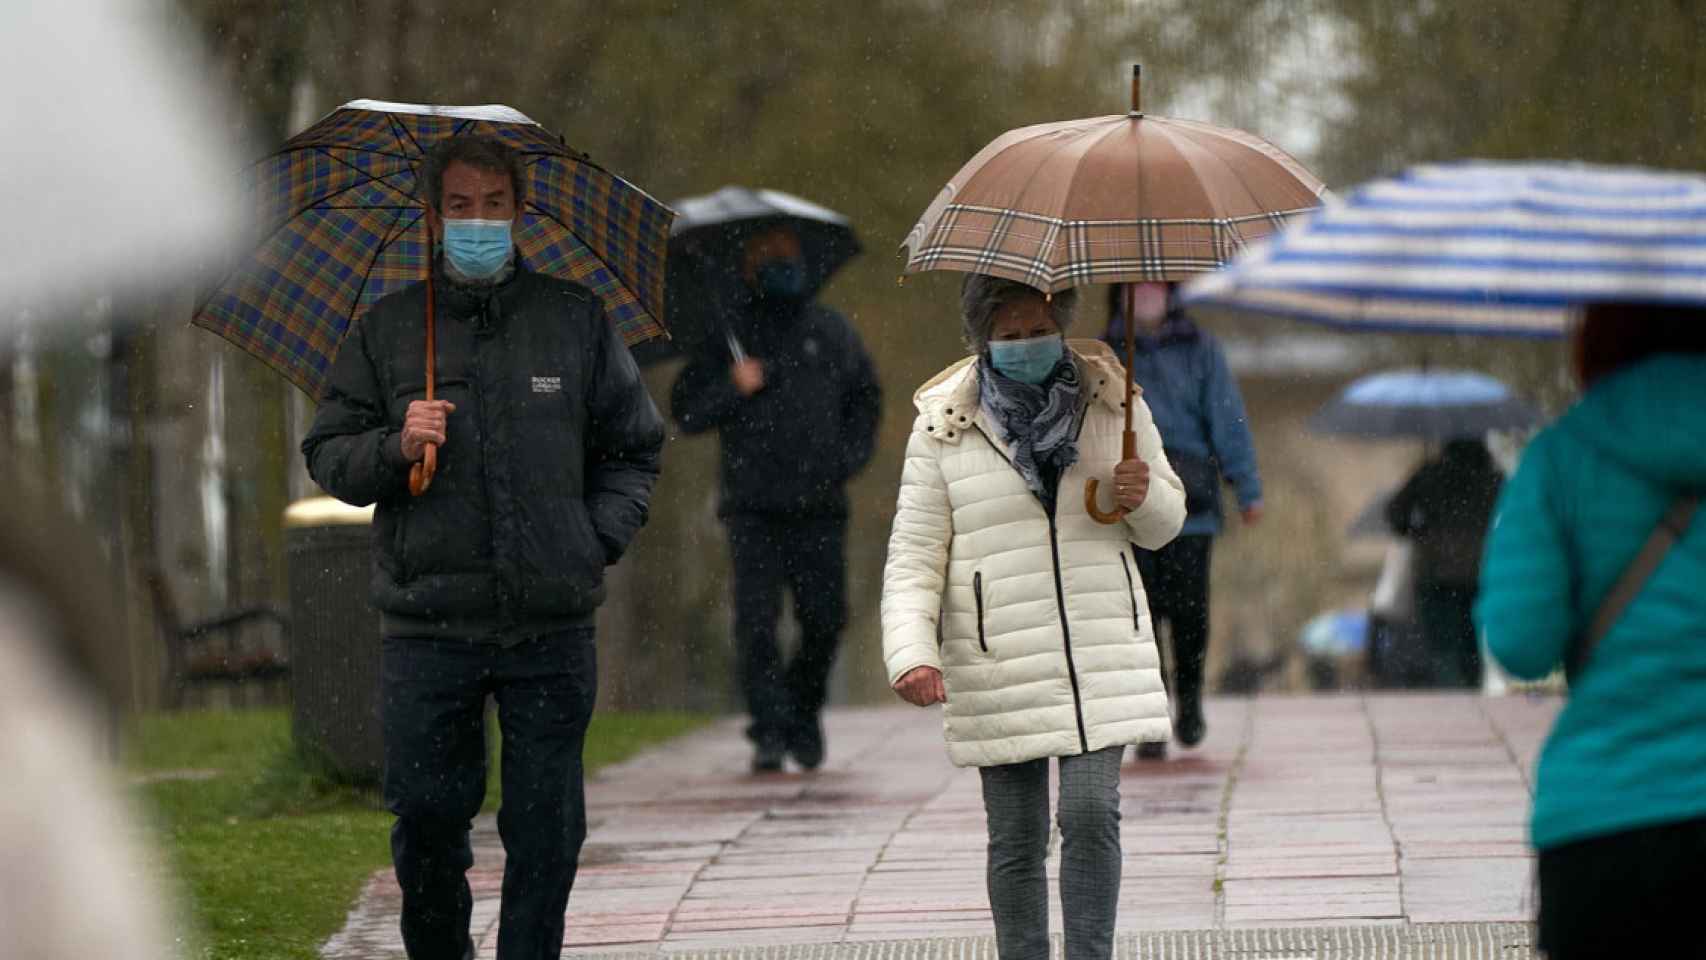 Imagen de archivo de varias personas refugiándose de las lluvias con un paraguas, como las previstas para este viernes